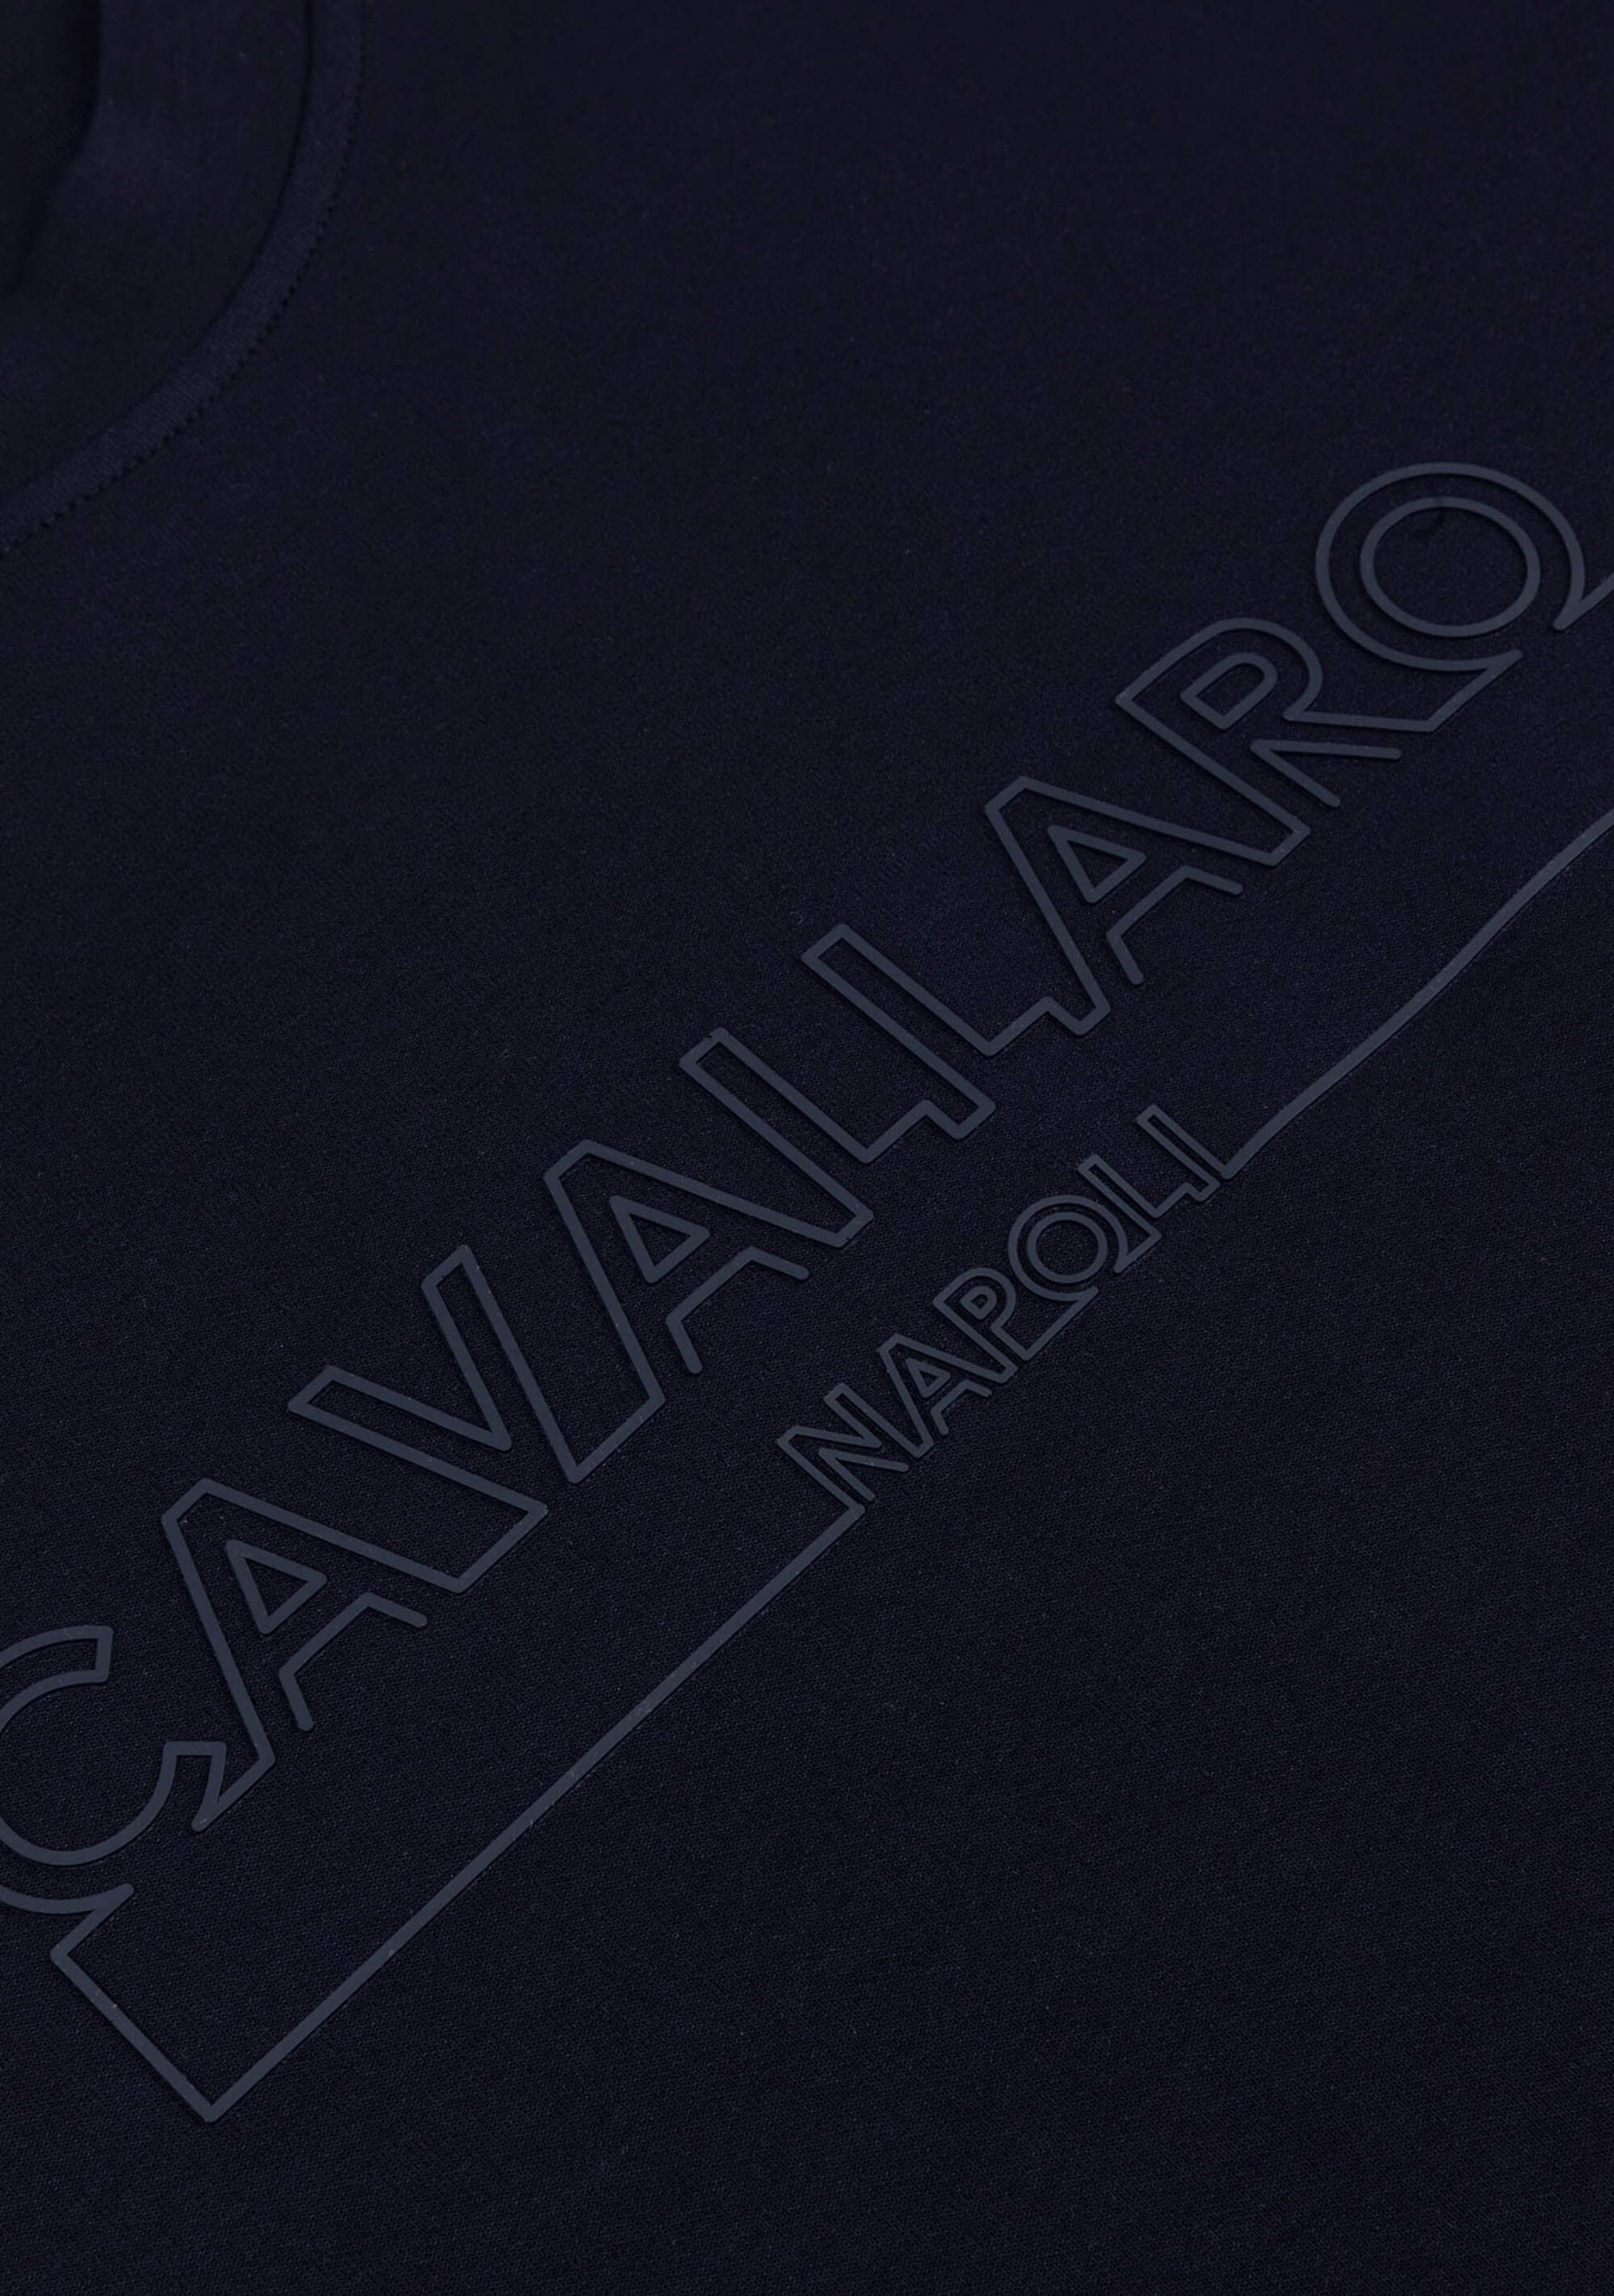 CAVALLARO SWEATER